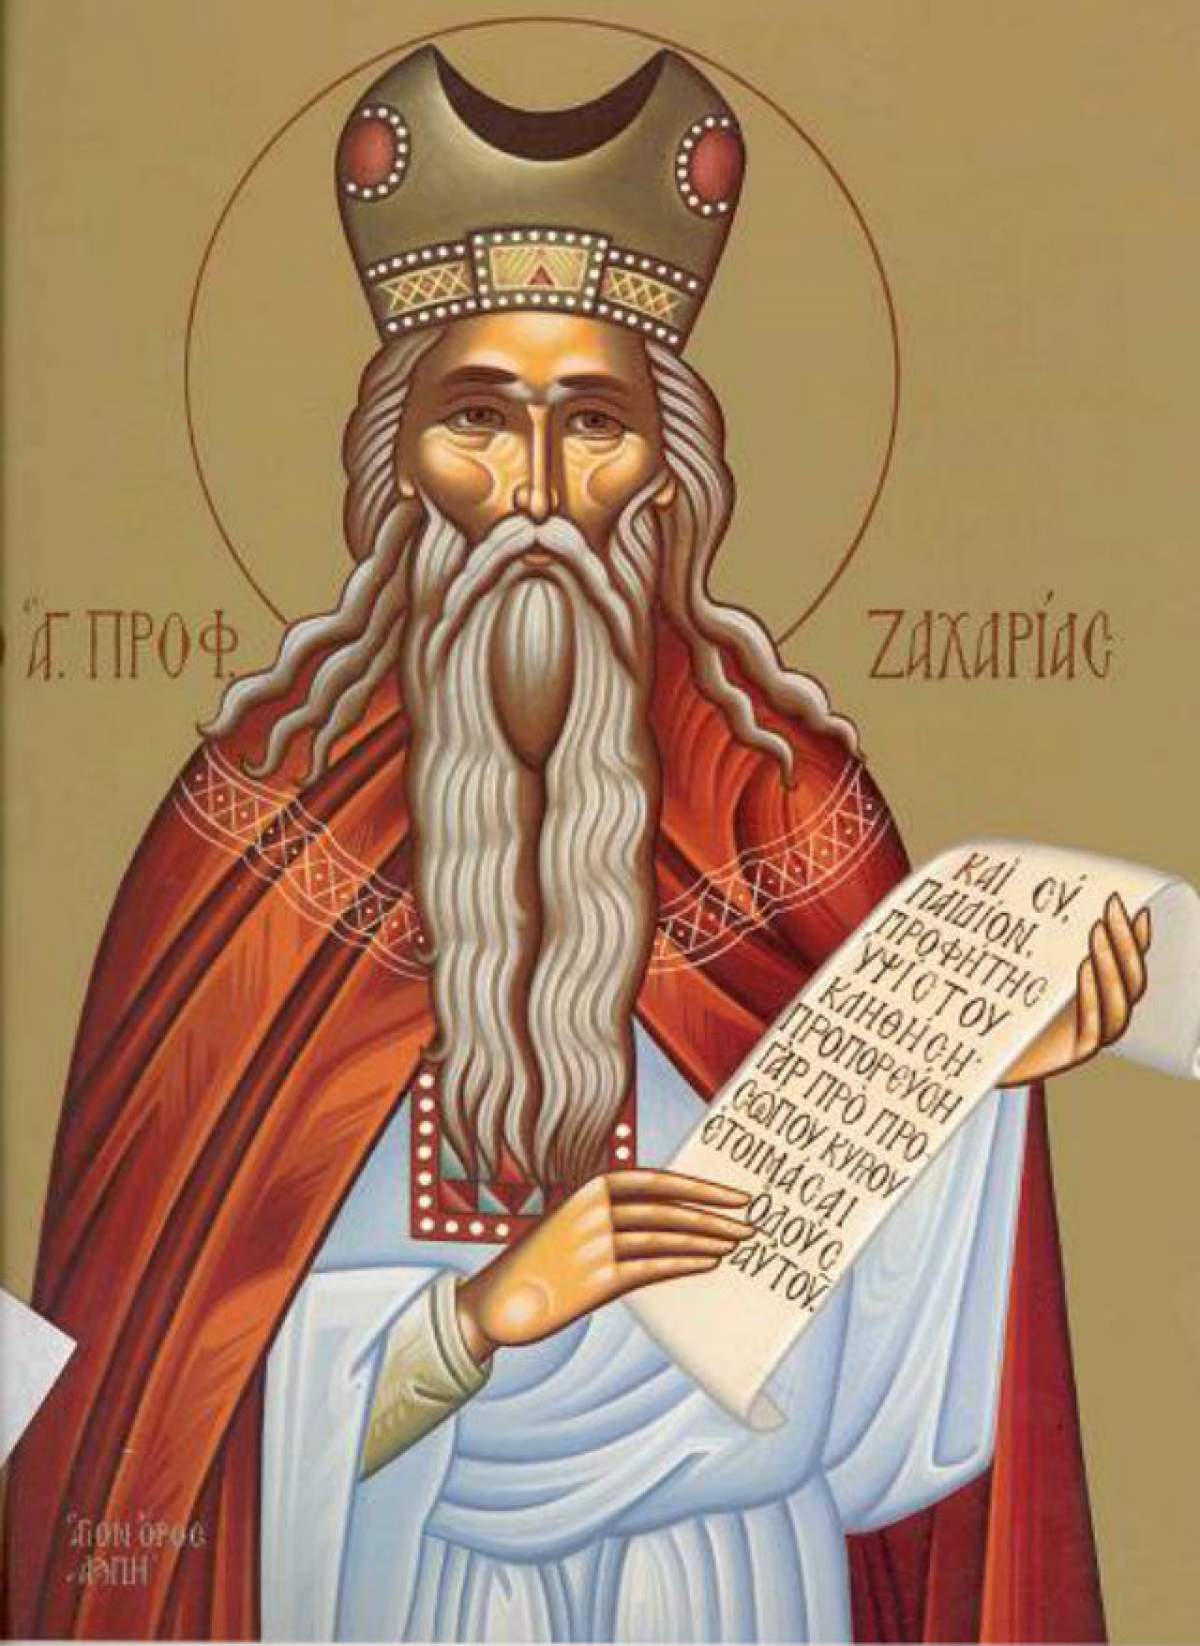 Zi de sărbătoare! Creştinii îl prăznuiesc pe Sf. Proroc Zaharia